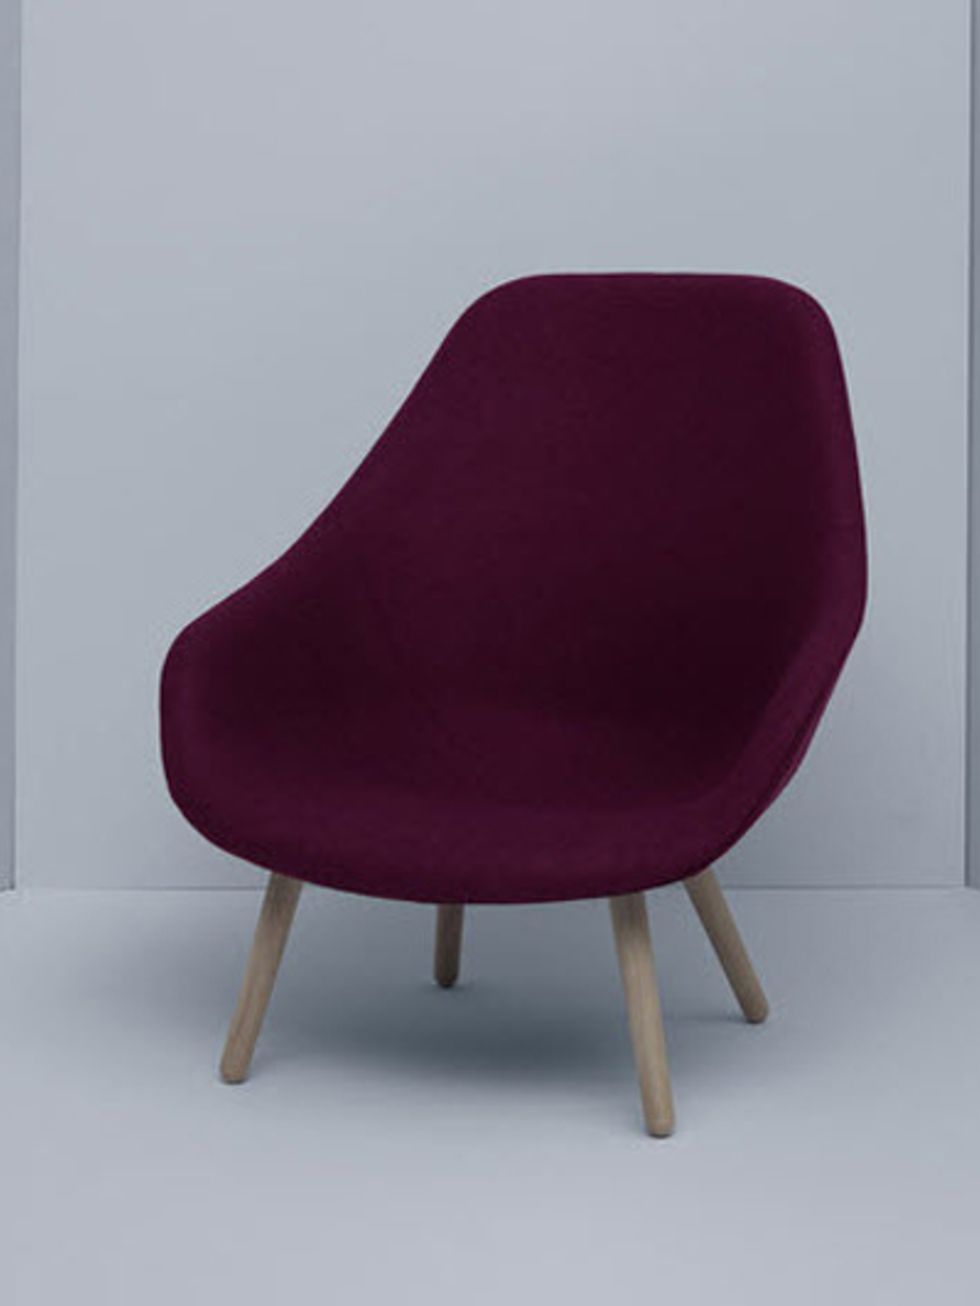 Wood, Brown, Red, Chair, Furniture, Floor, Magenta, Carmine, Purple, Maroon, 